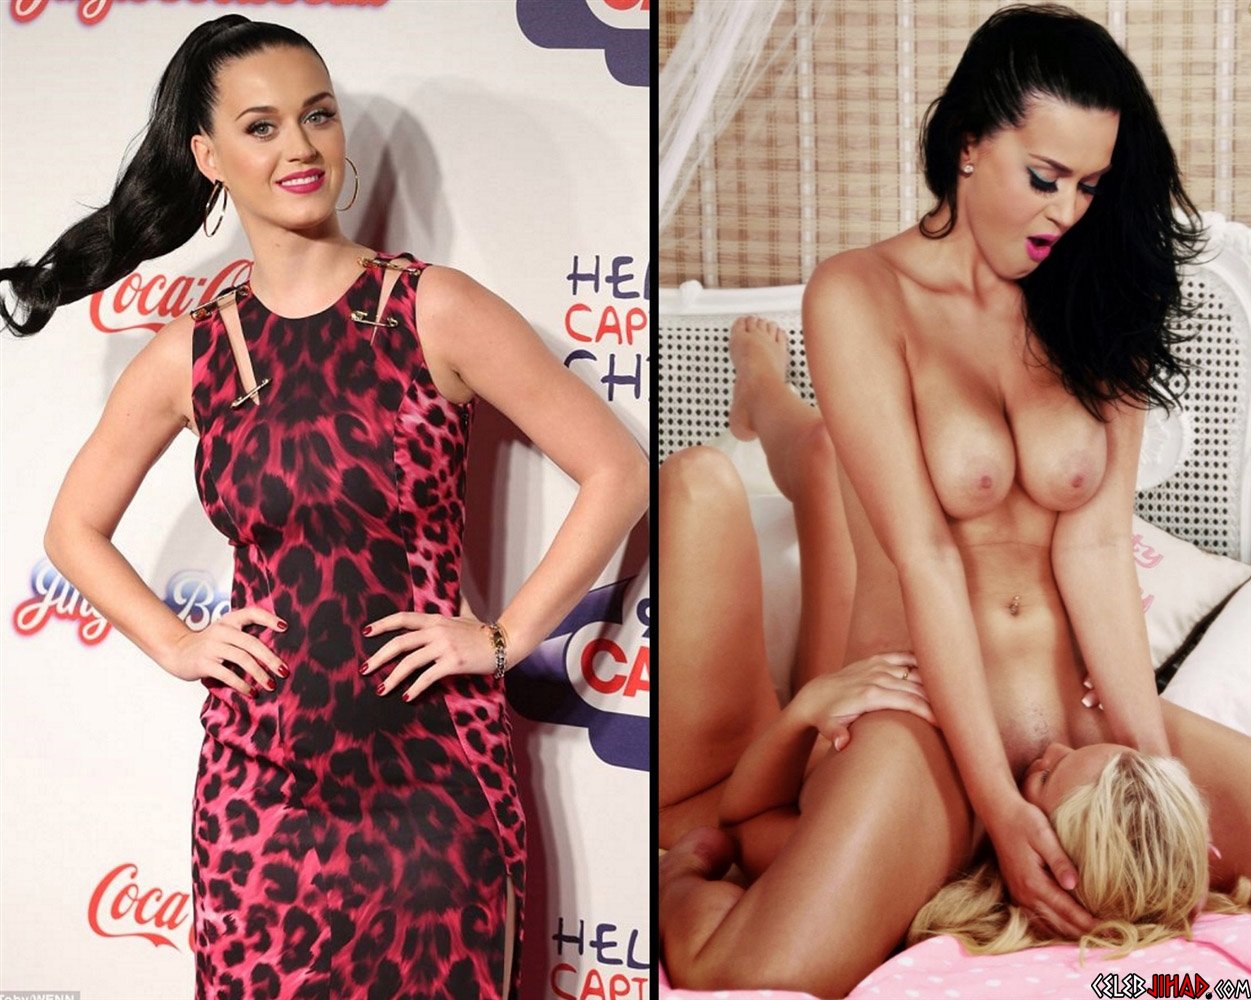 Katy perry naked nude vagina